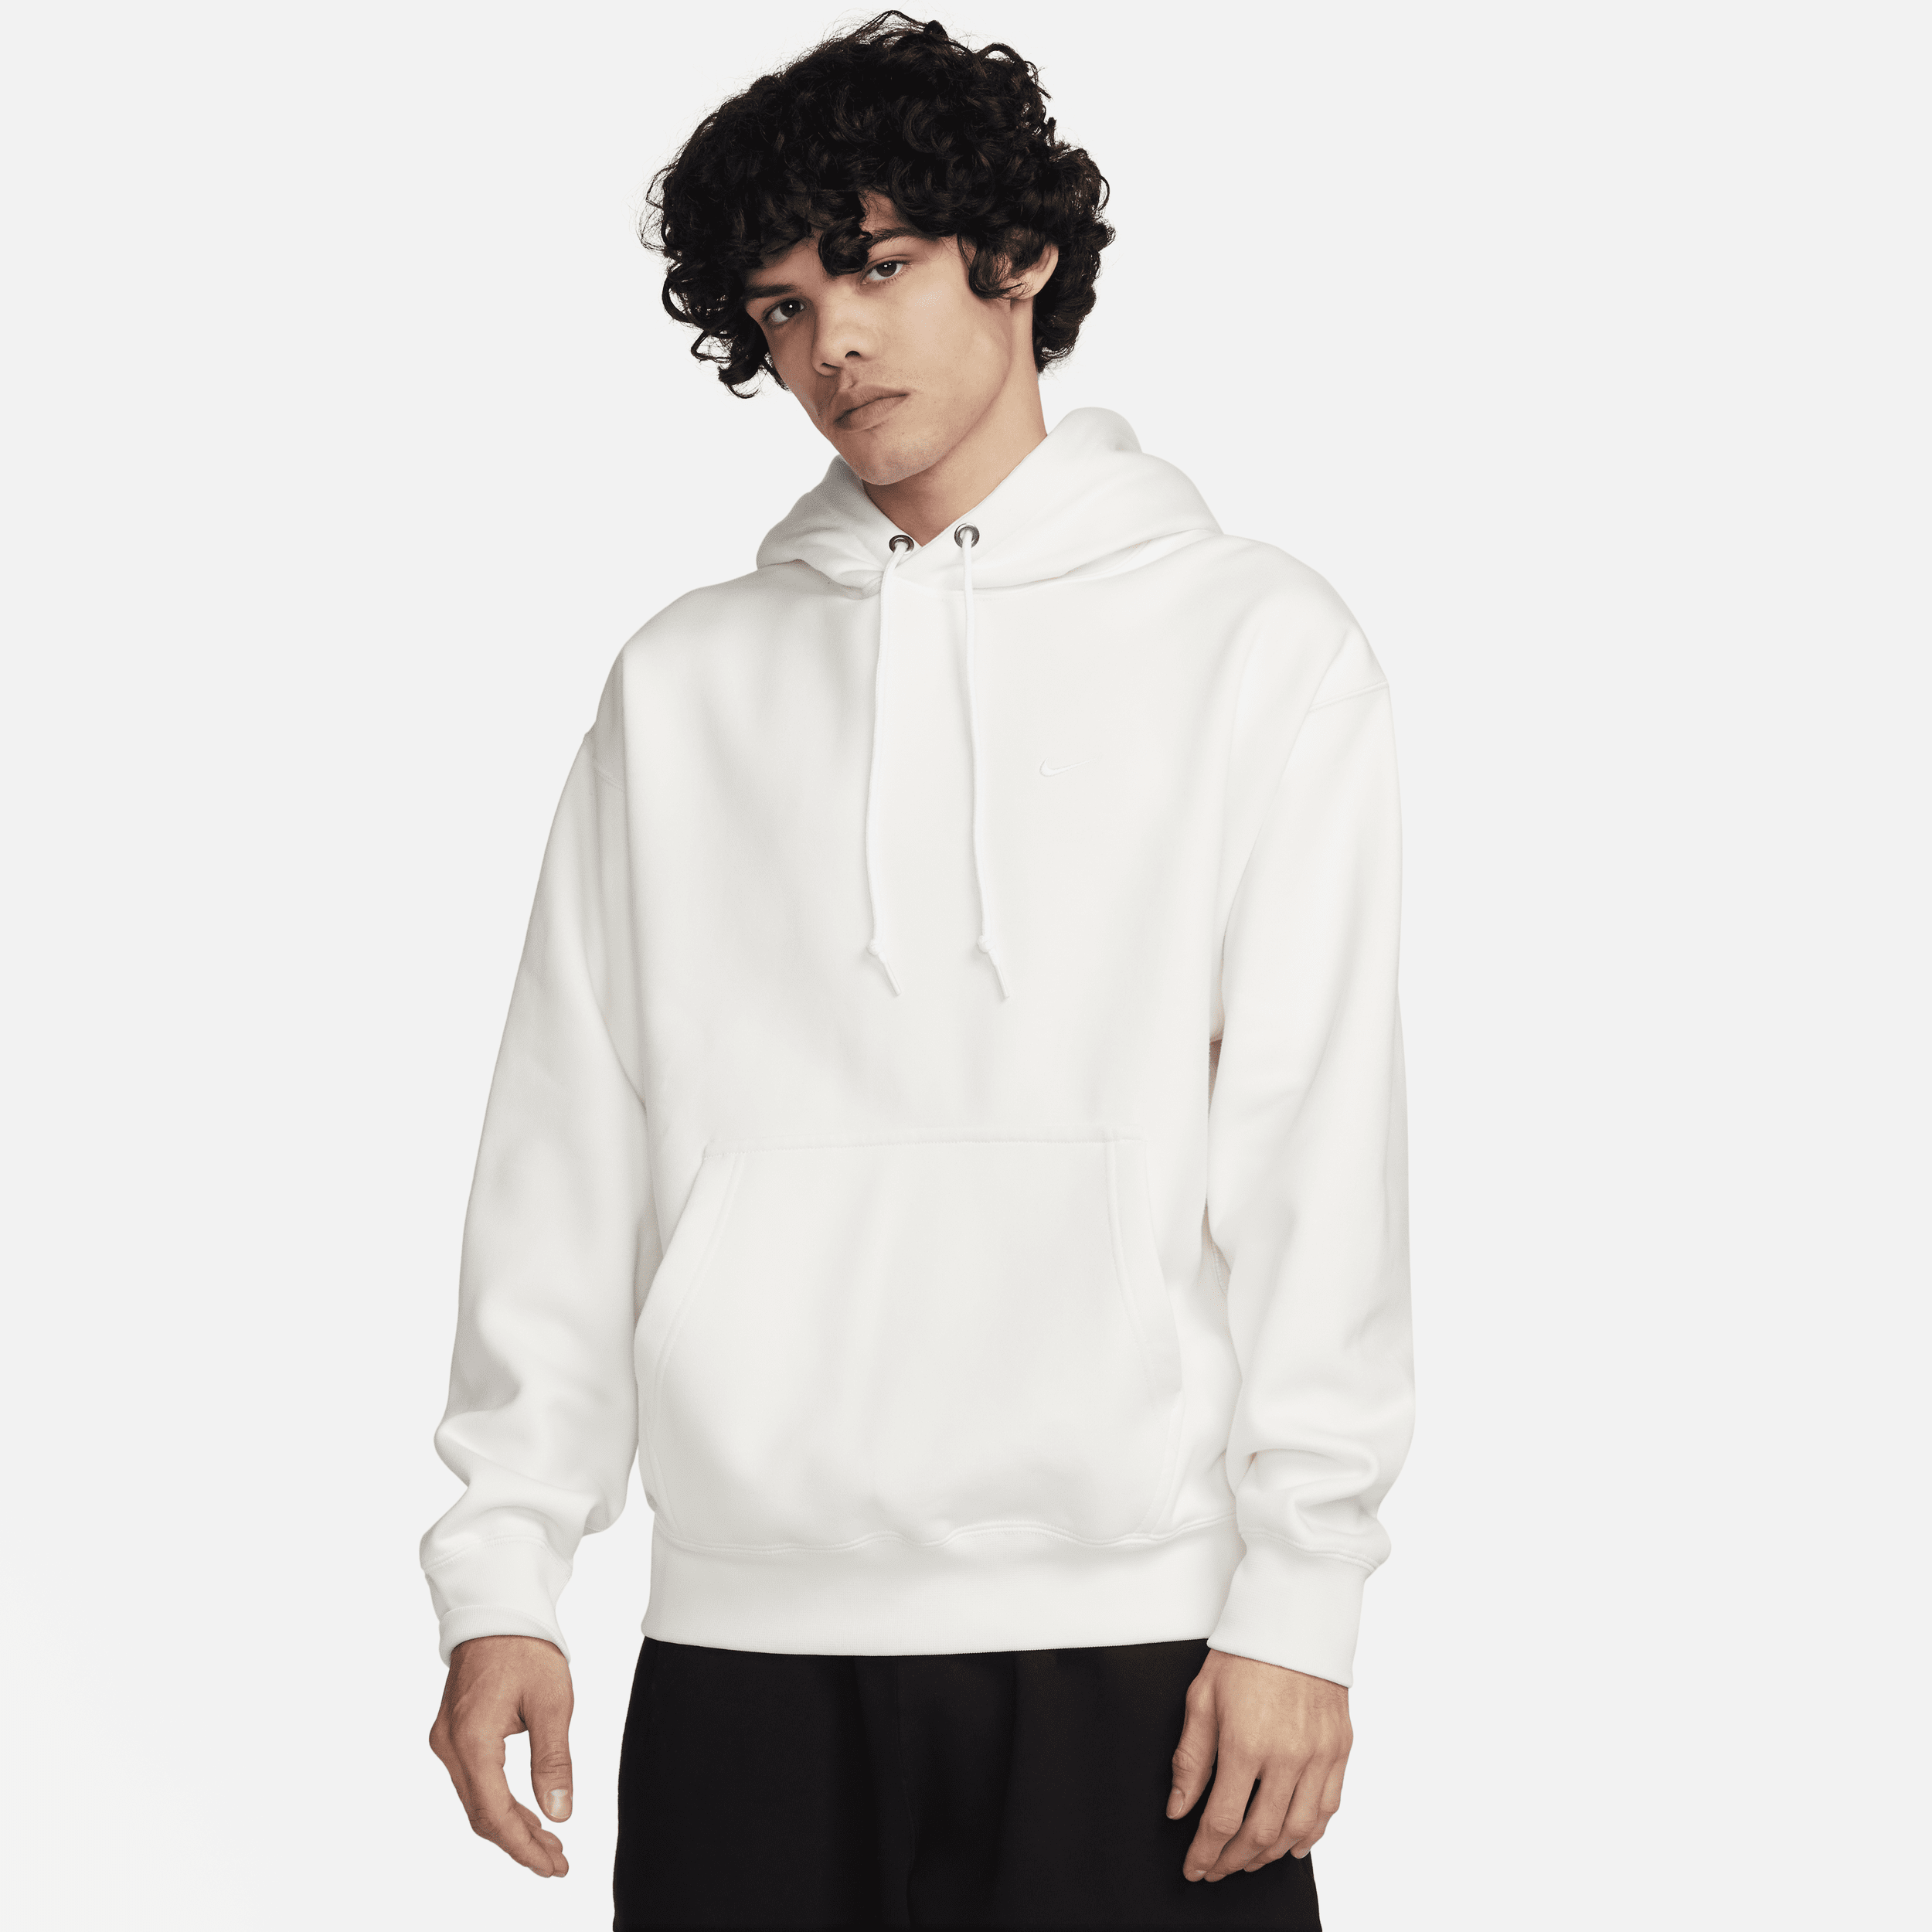 Felpa pullover in fleece con cappuccio Nike Solo Swoosh – Uomo - Bianco